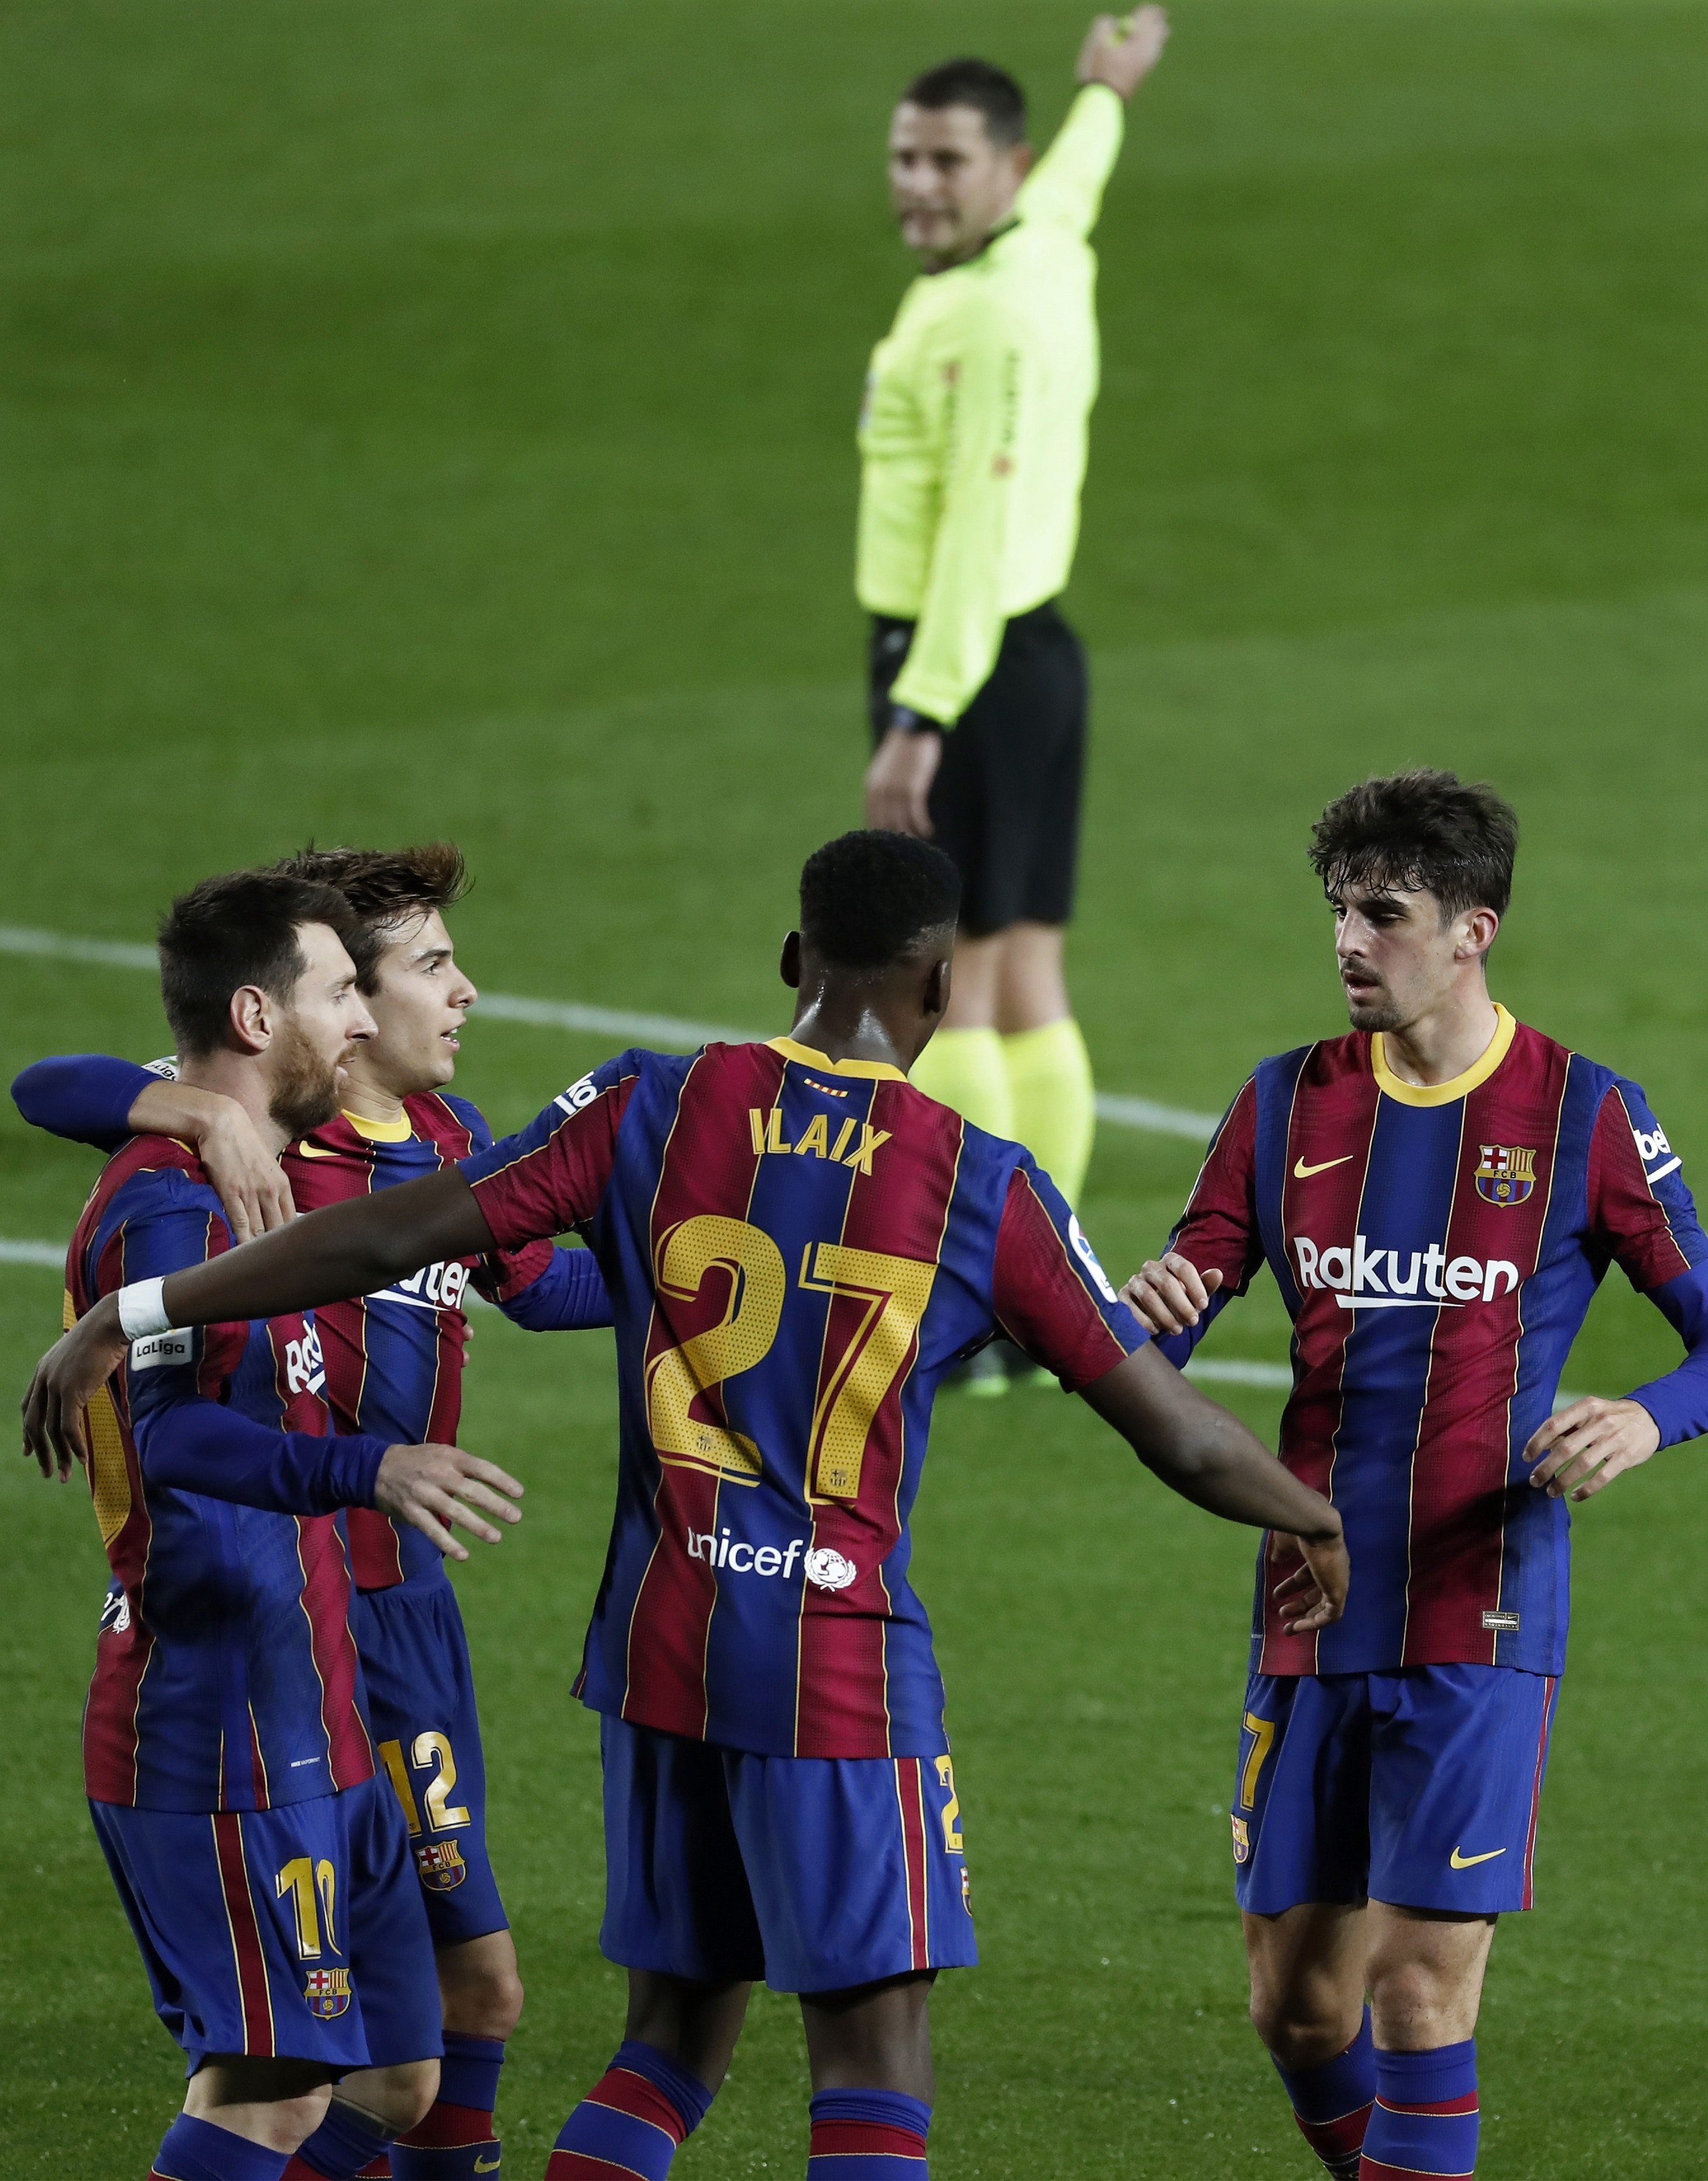 Allau d'atacs contra el VAR pel gol anul·lat a Messi